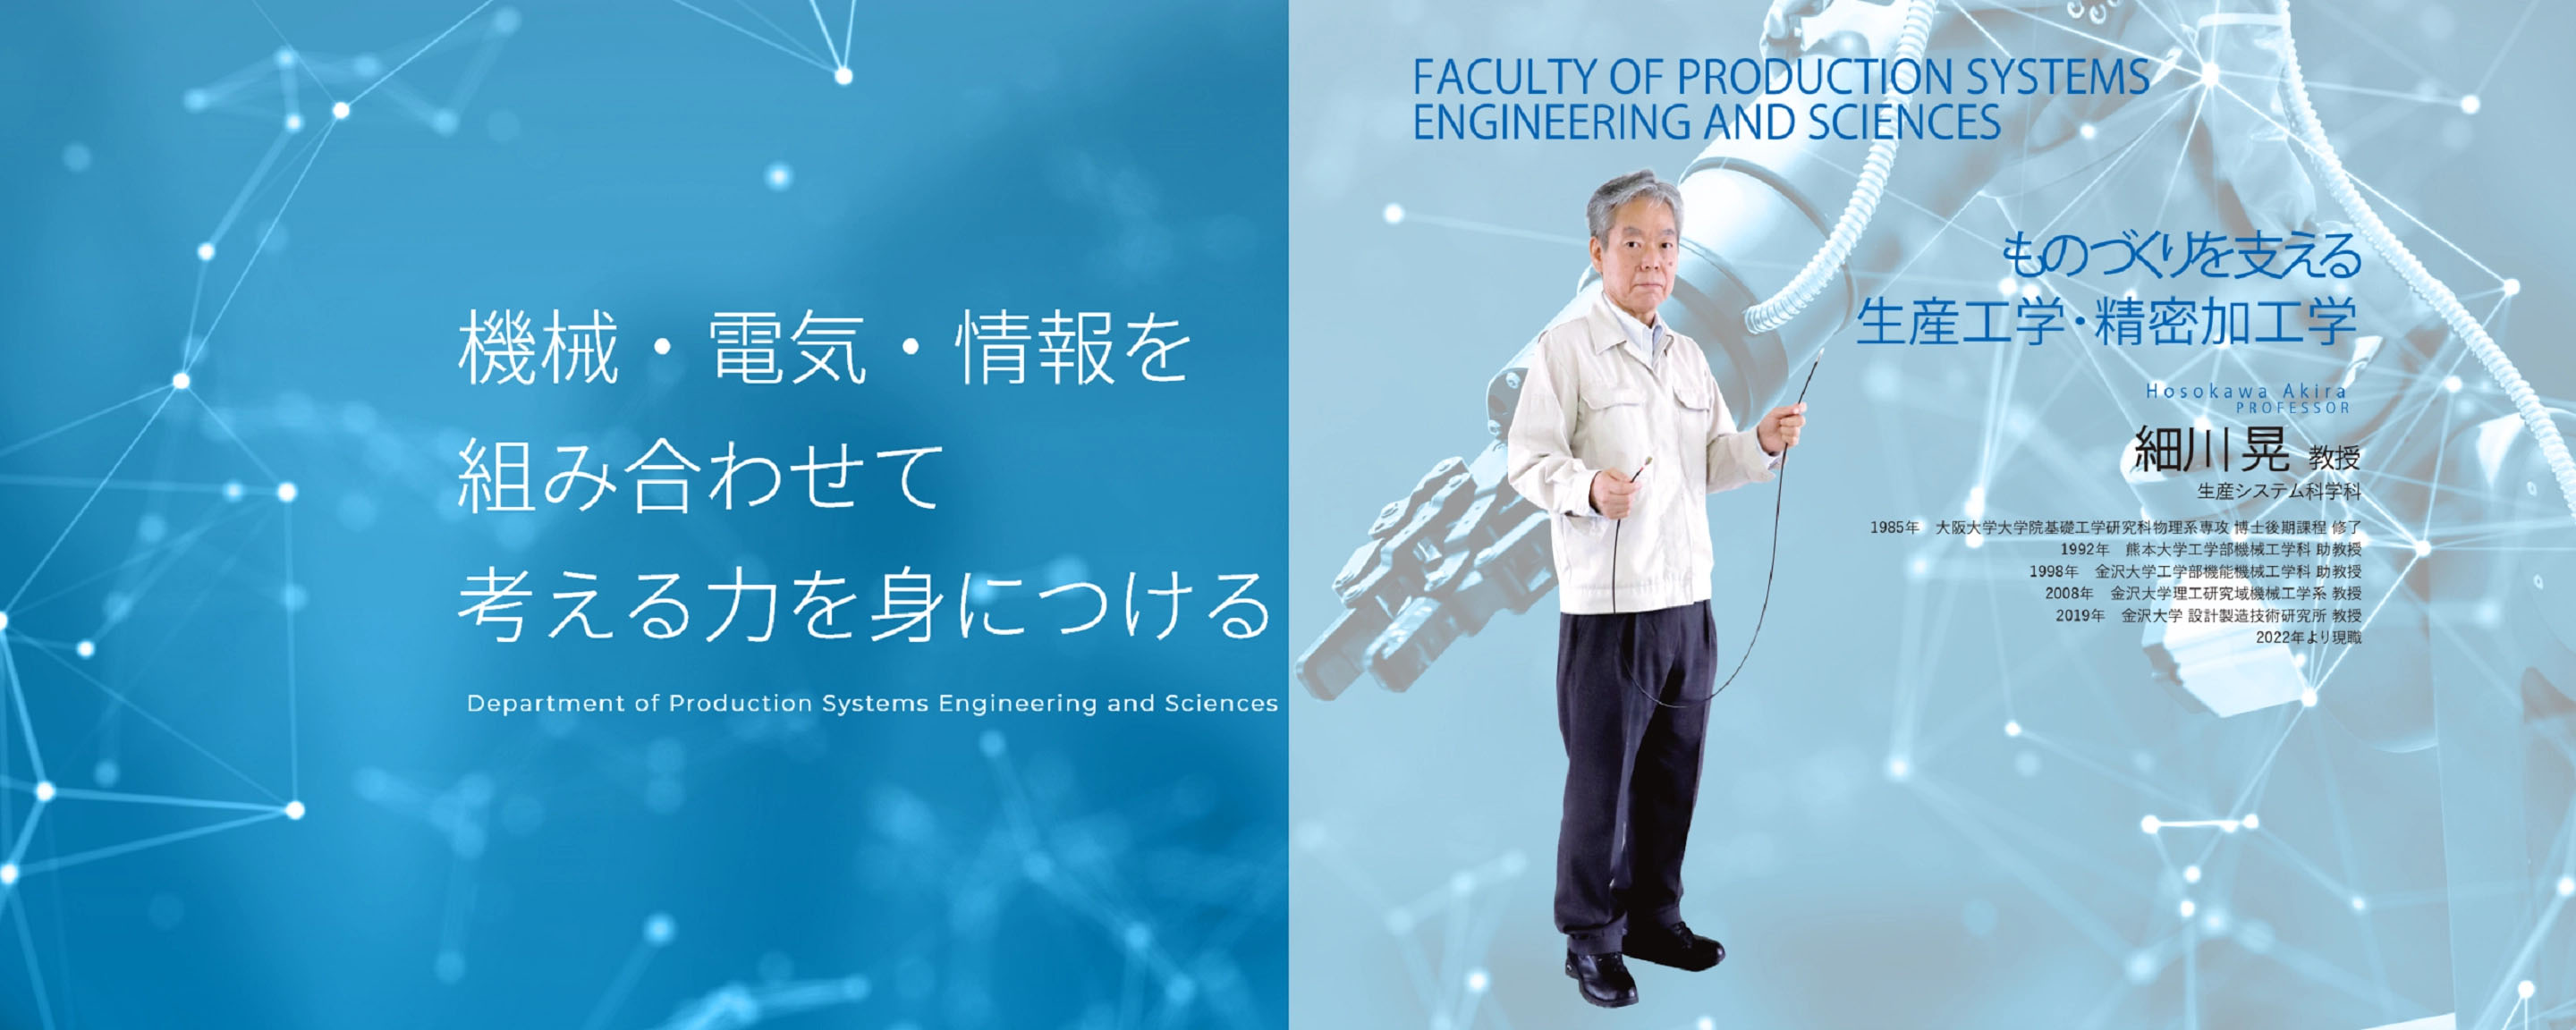 公立小松大学生産科学科受験生特設サイト